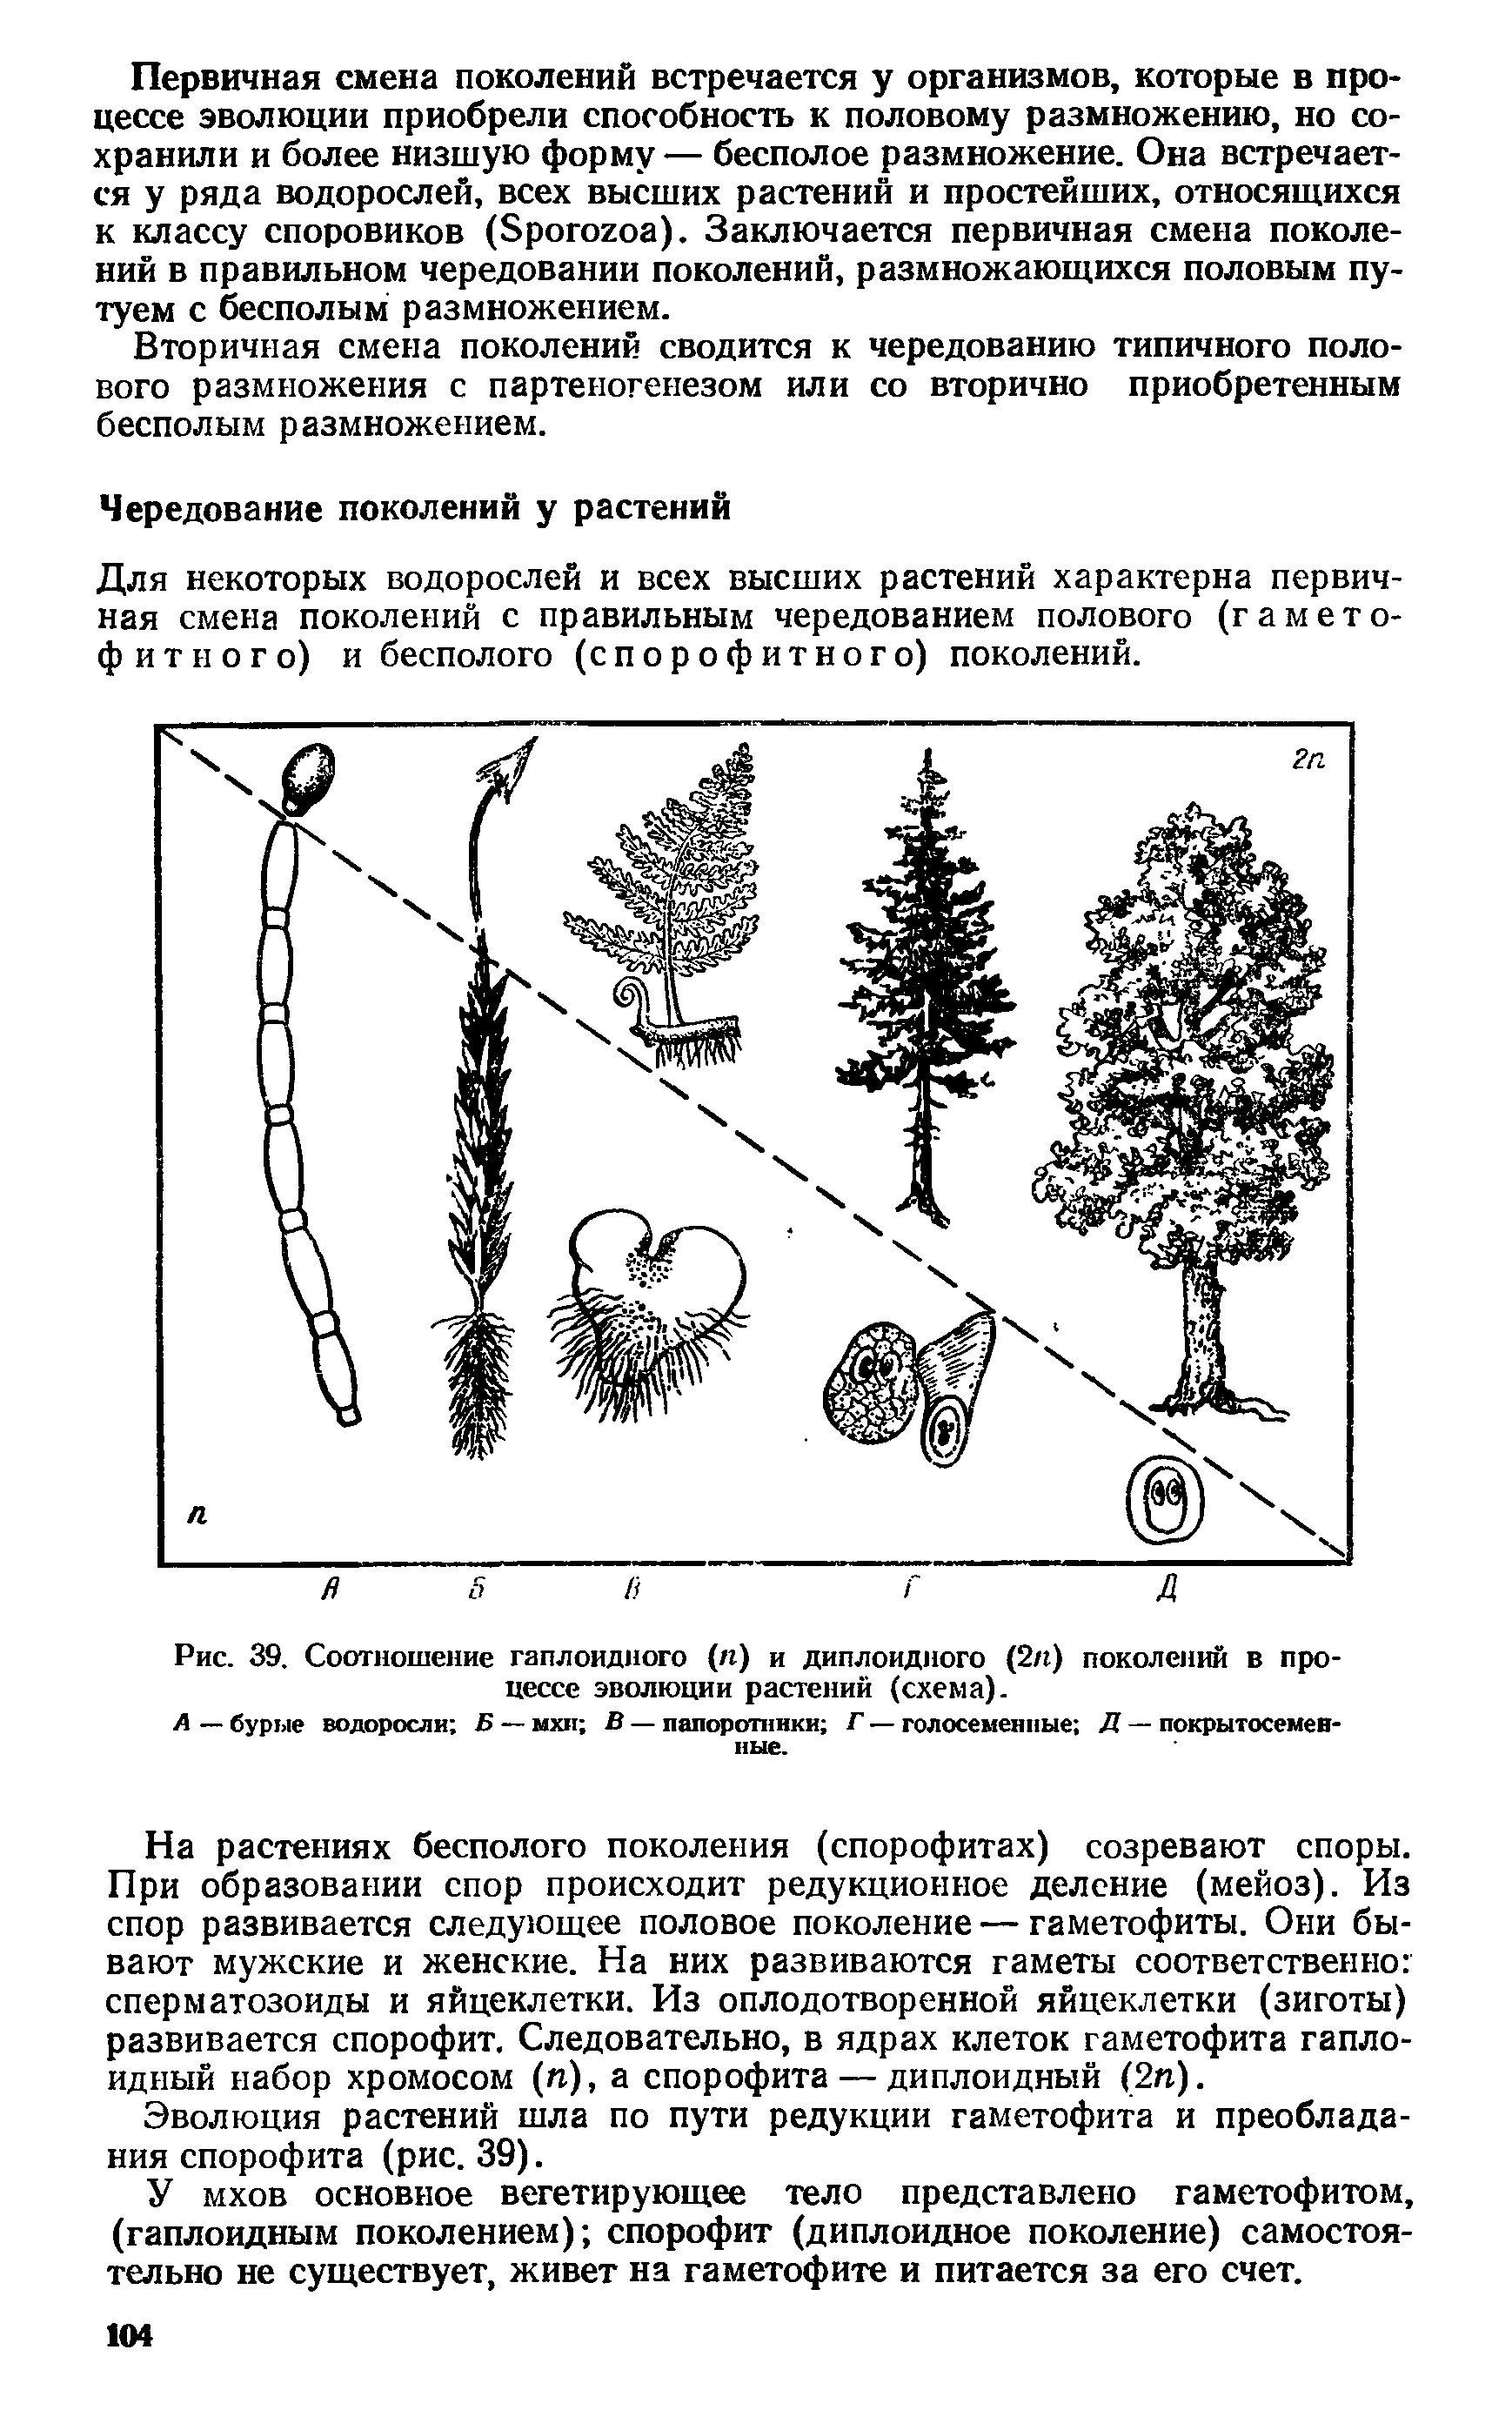 Рис. 39. Соотношение гаплоидного (к) и диплоидного (2п) поколений в процессе эволюции растений (схема).